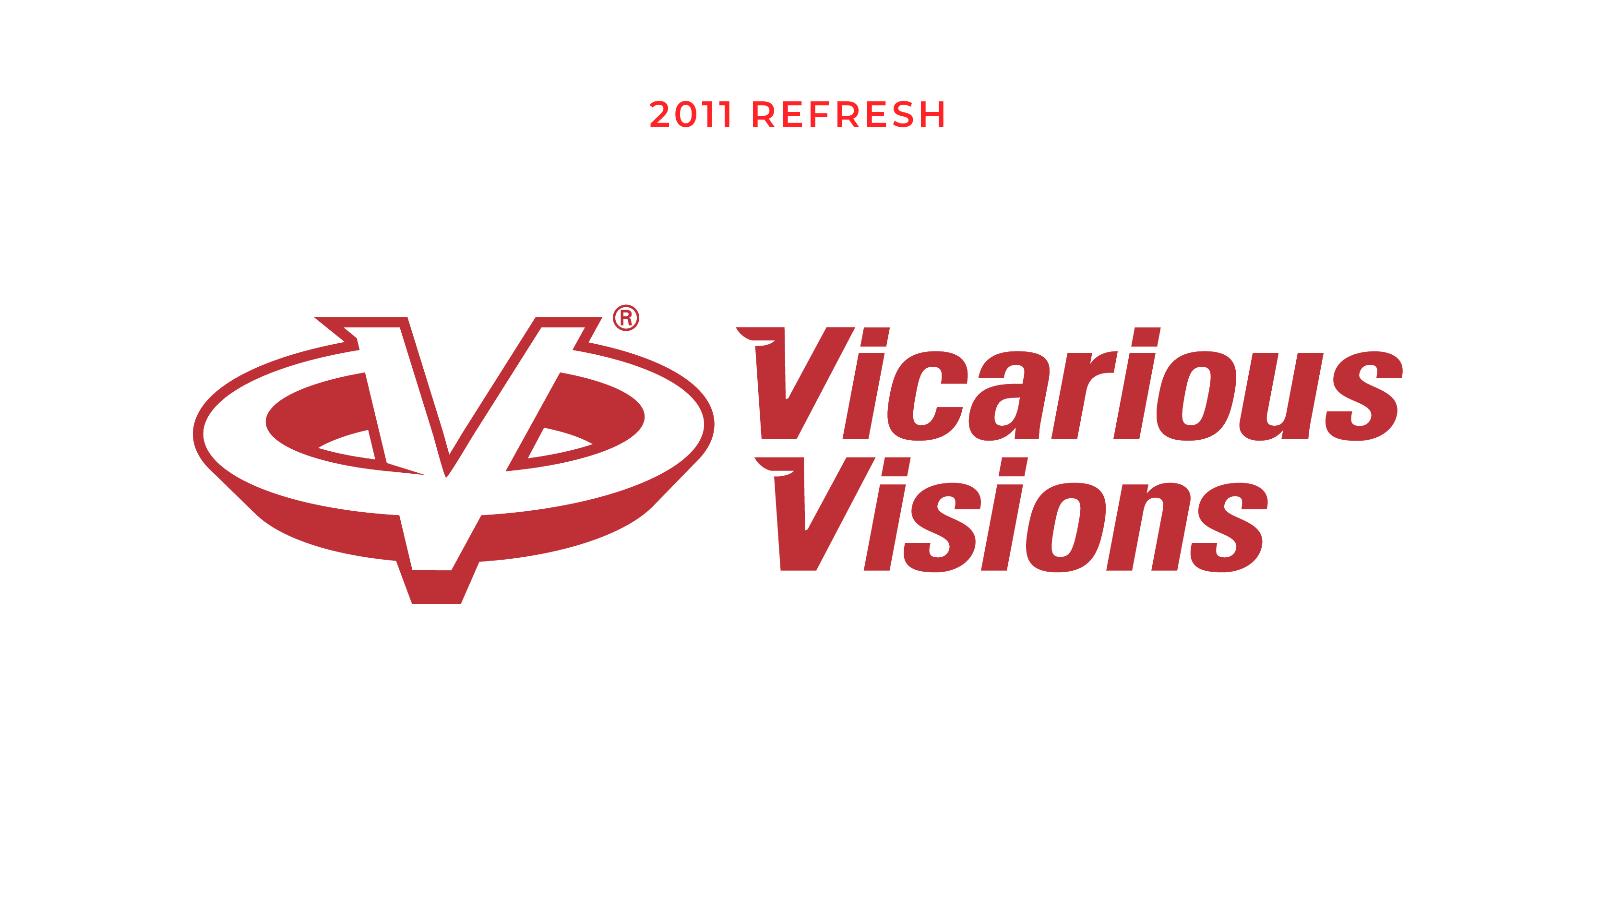 Vicarious Visions | 2011 logo refresh